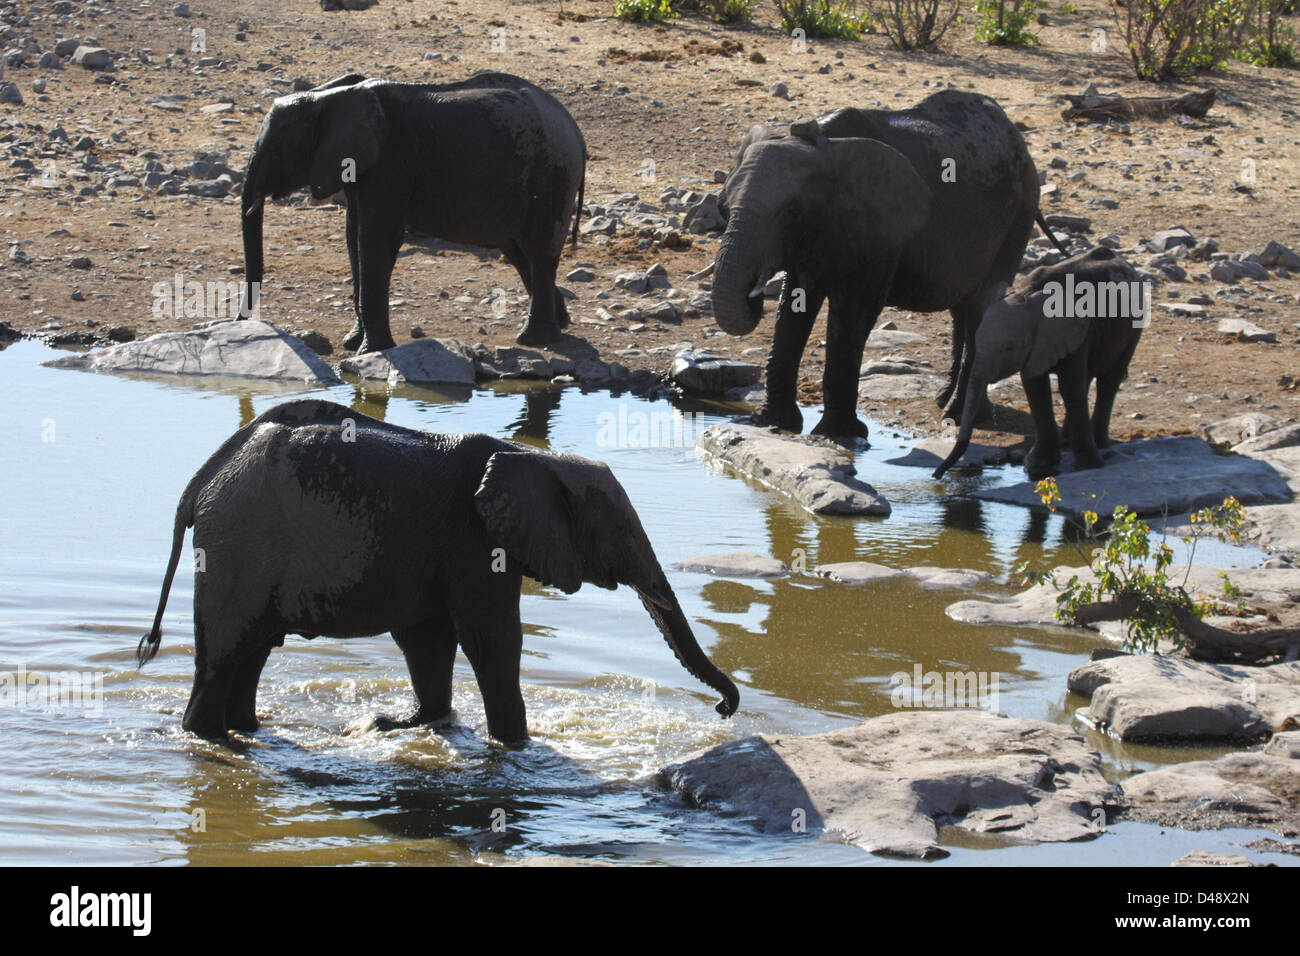 Elephant herd at waterhole, Etosha National Park, Namibia Stock Photo